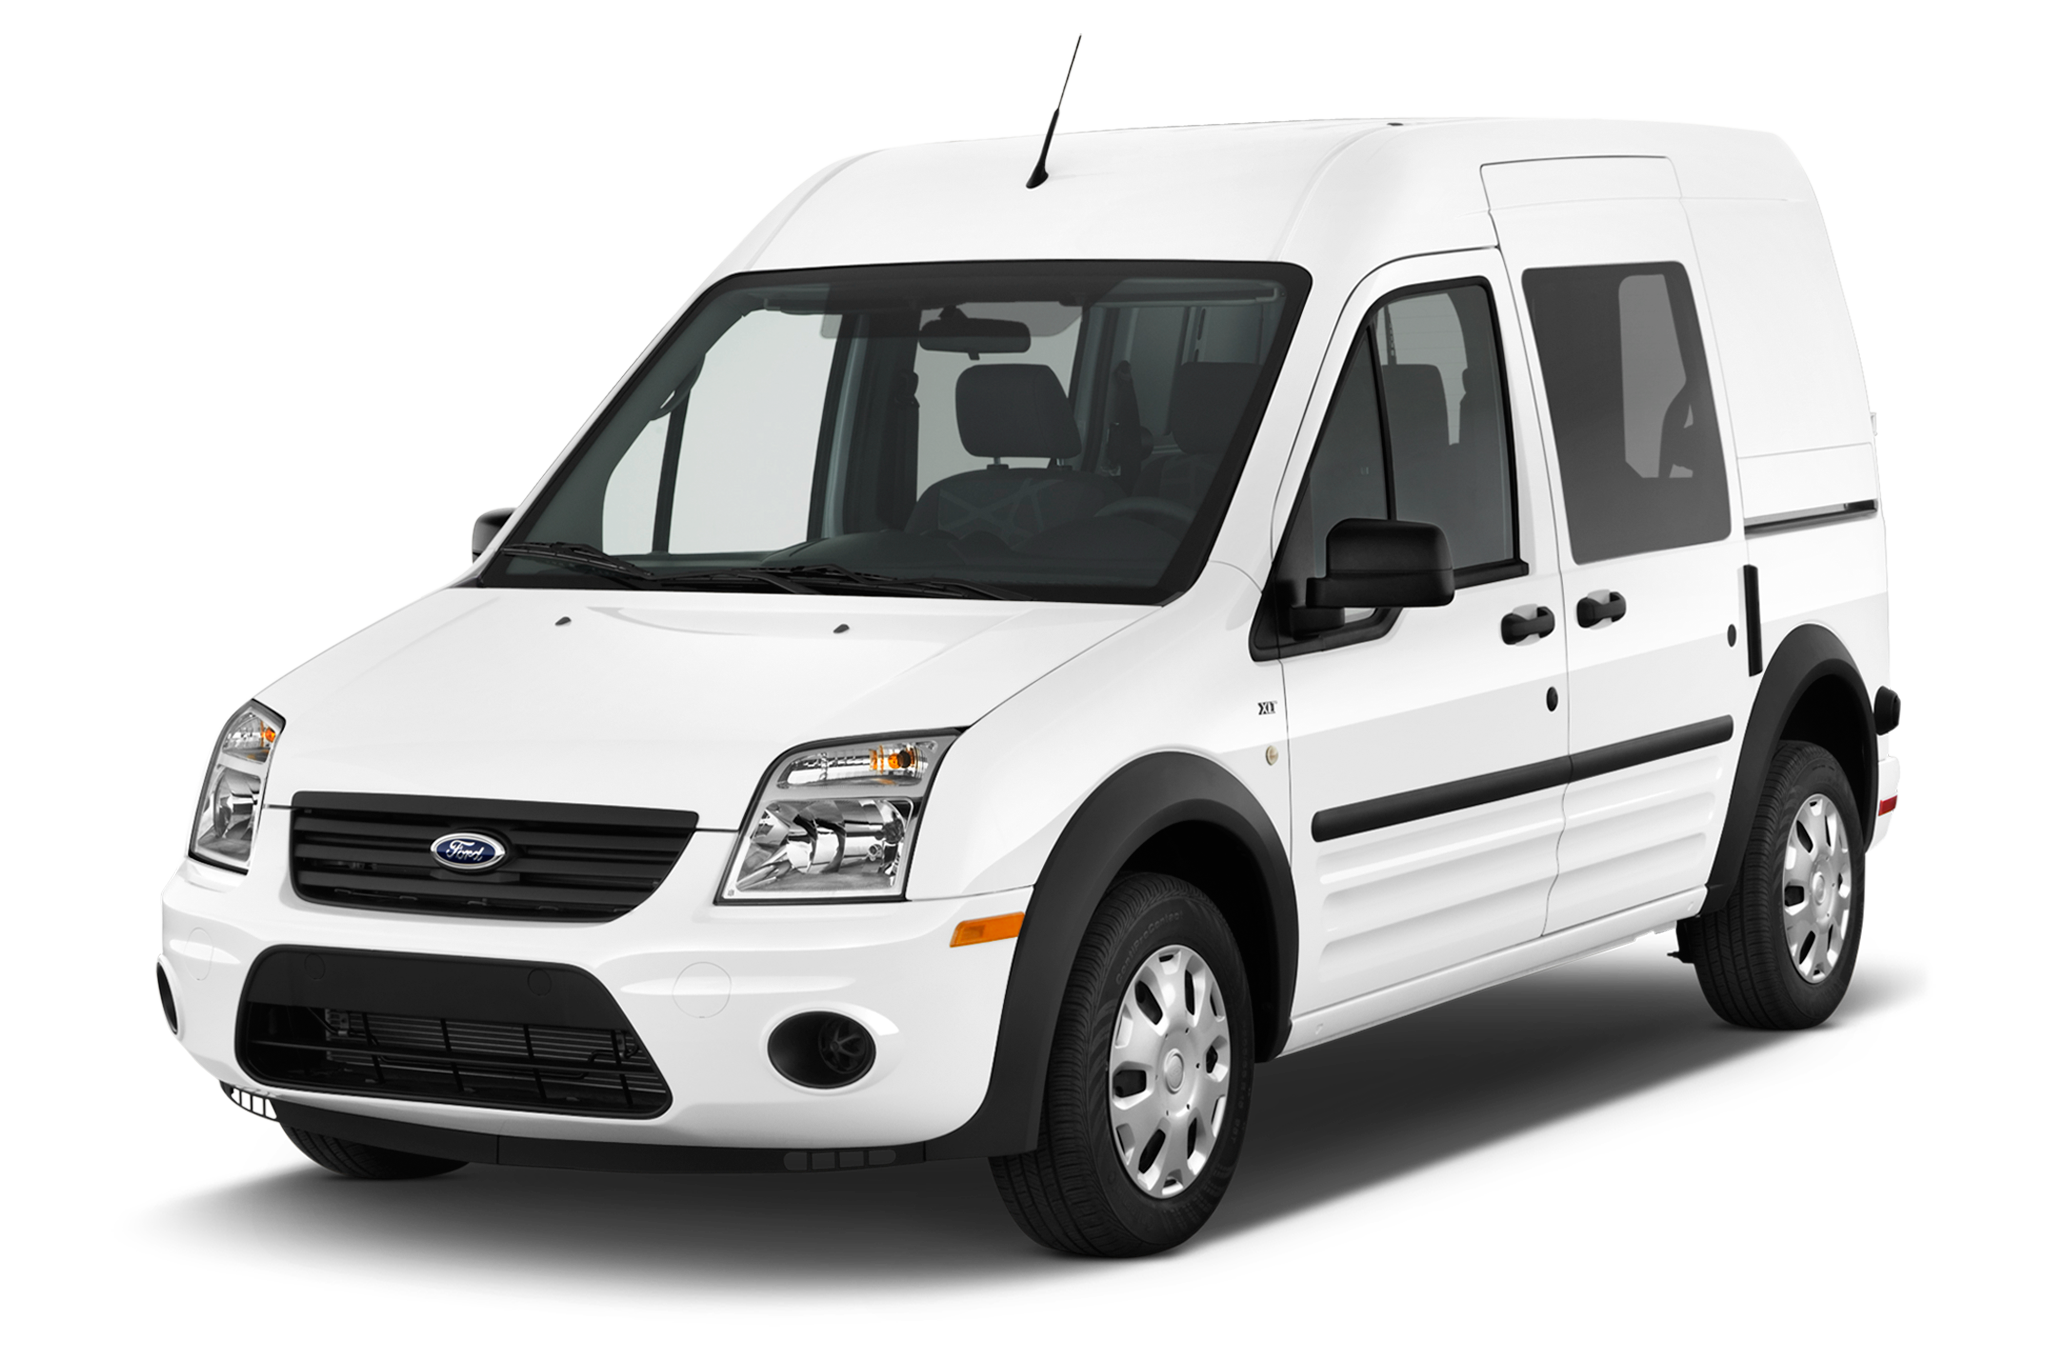 Ford Transit Connect Wagon XL LWB (Rear Liftgate) 2014 International